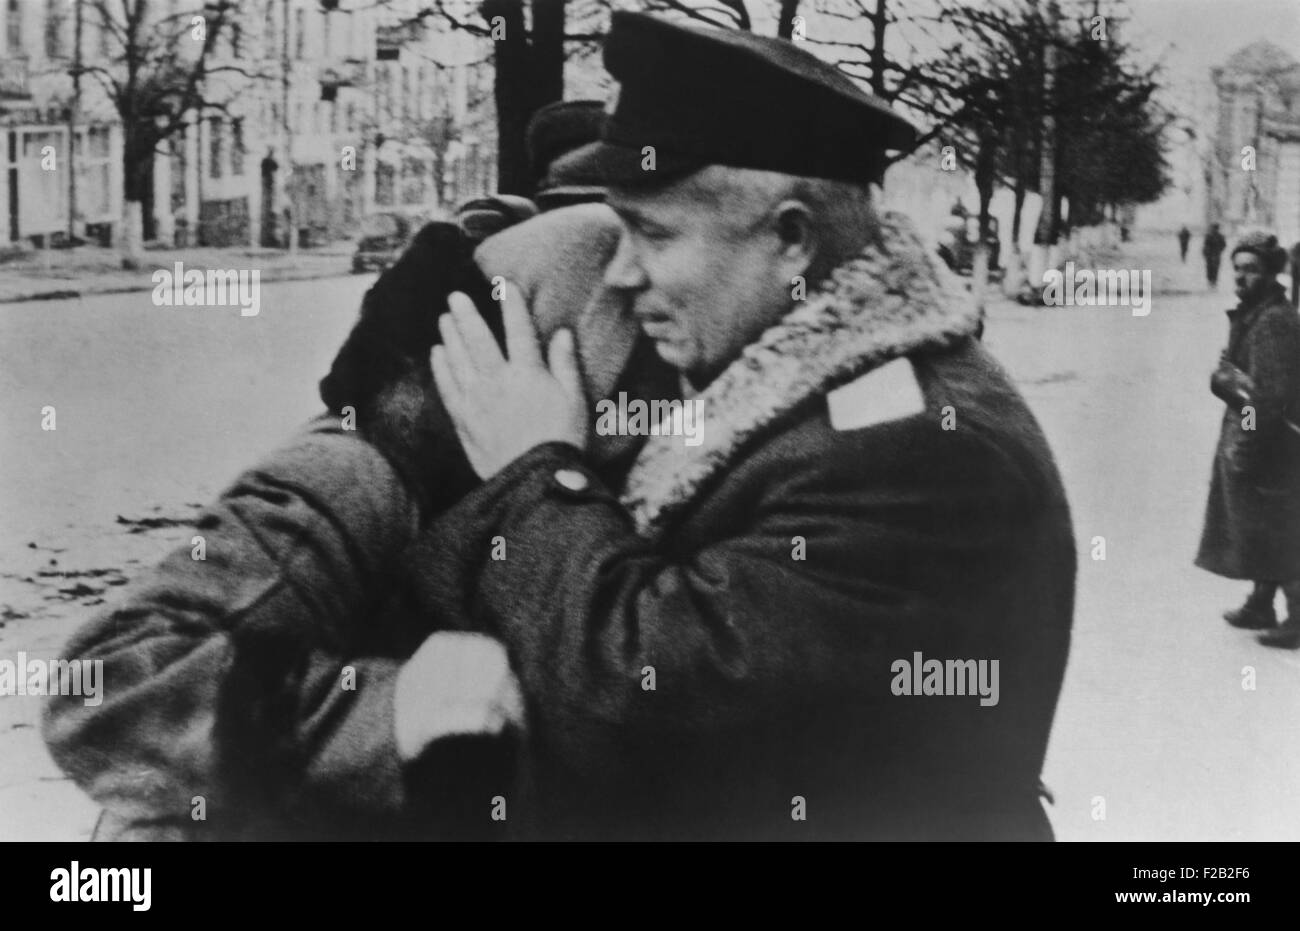 Nikita Khrouchtchev réconfortant d'une femme au cours de la libération de l'Ukraine de nazis en 1943. Khrouchtchev a été un commissaire politique à Stalingrad et tenu le grade de lieutenant-général. CSU (2015  8 537) Banque D'Images